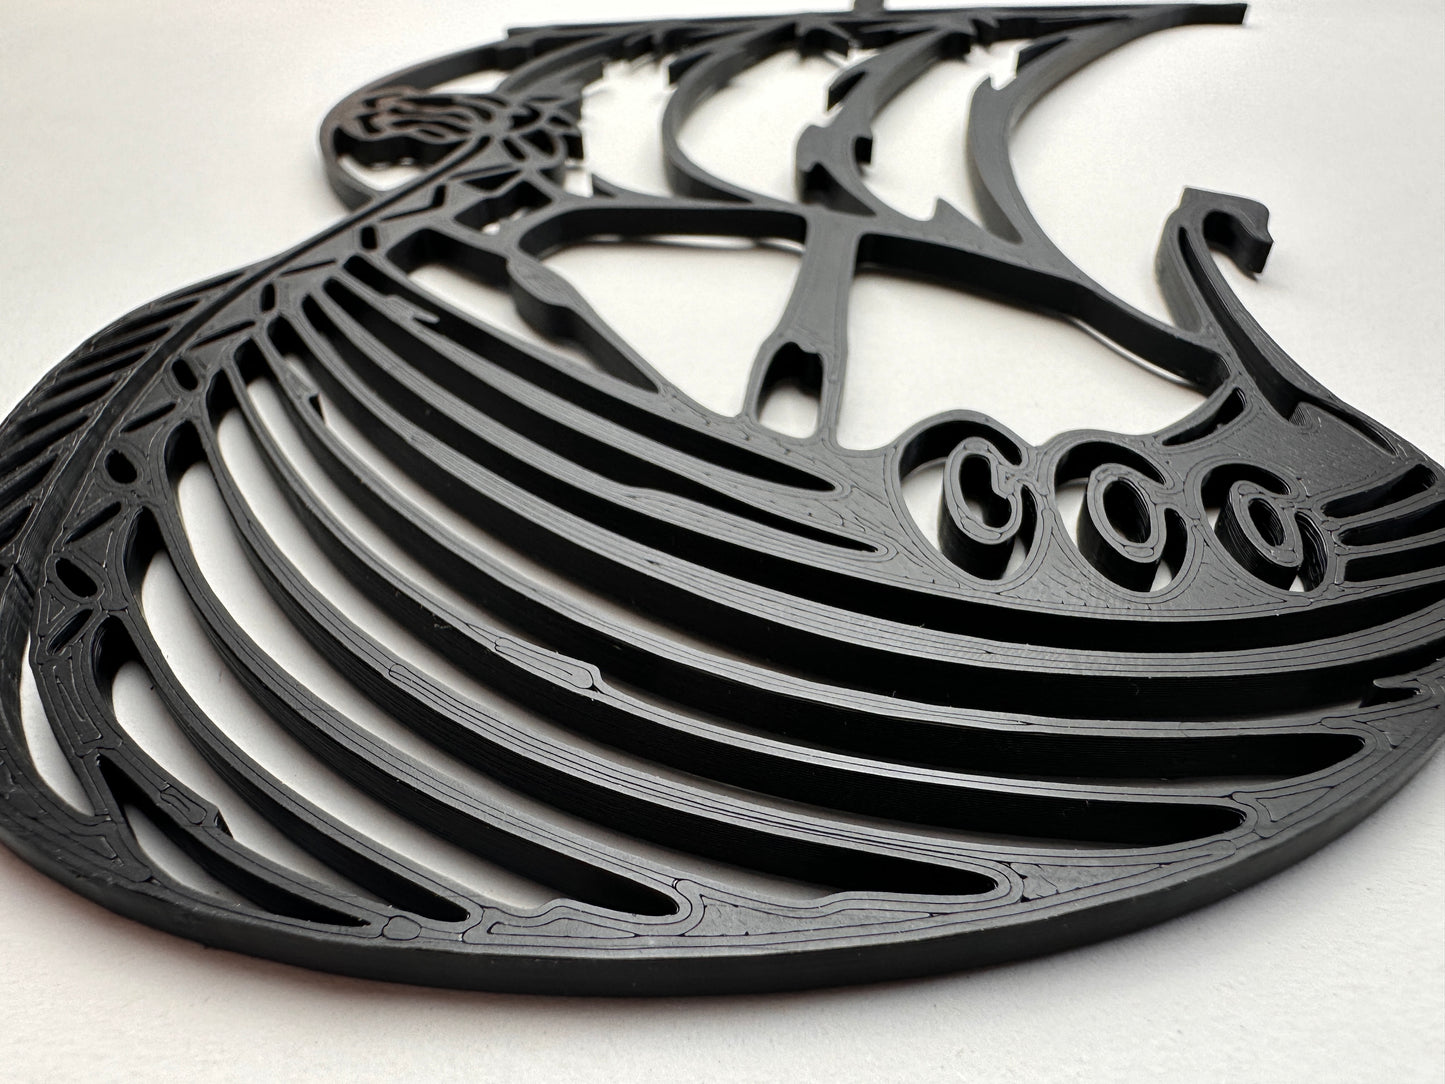 Episches Wikingerschiff - 3D-gedruckte Wanddekoration aus PLA-Kunststoff!